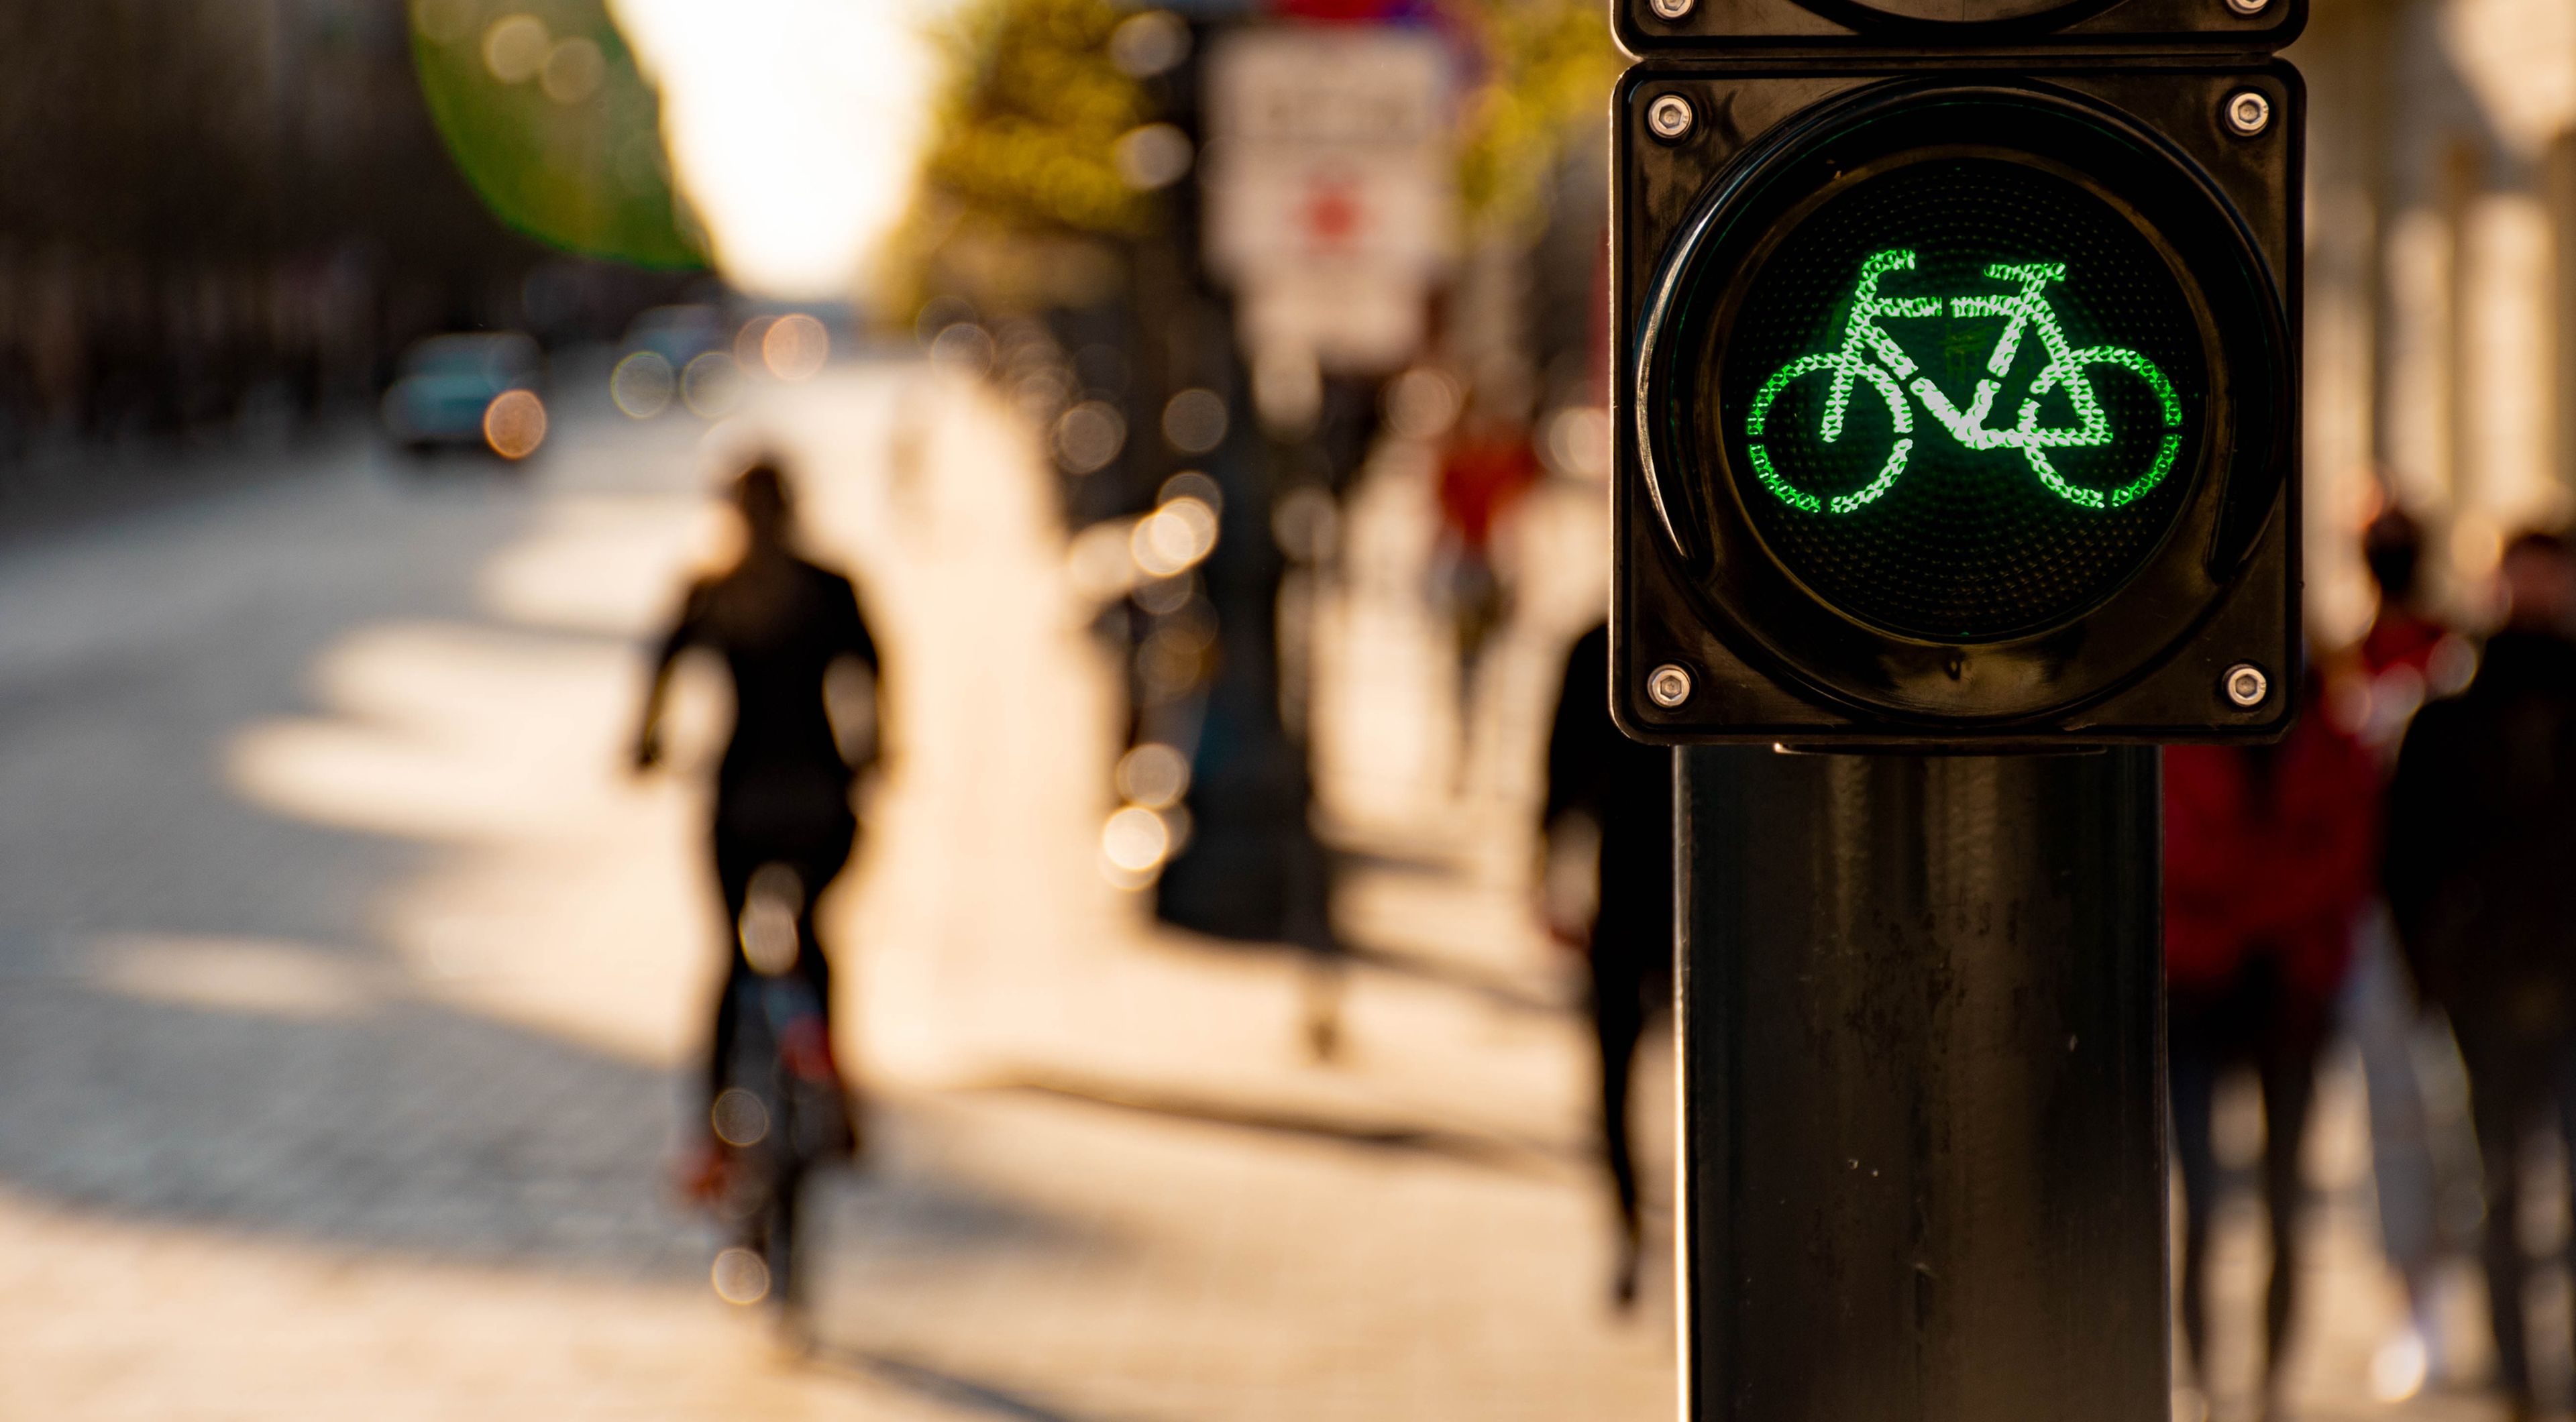 Semáforo para bicicletas